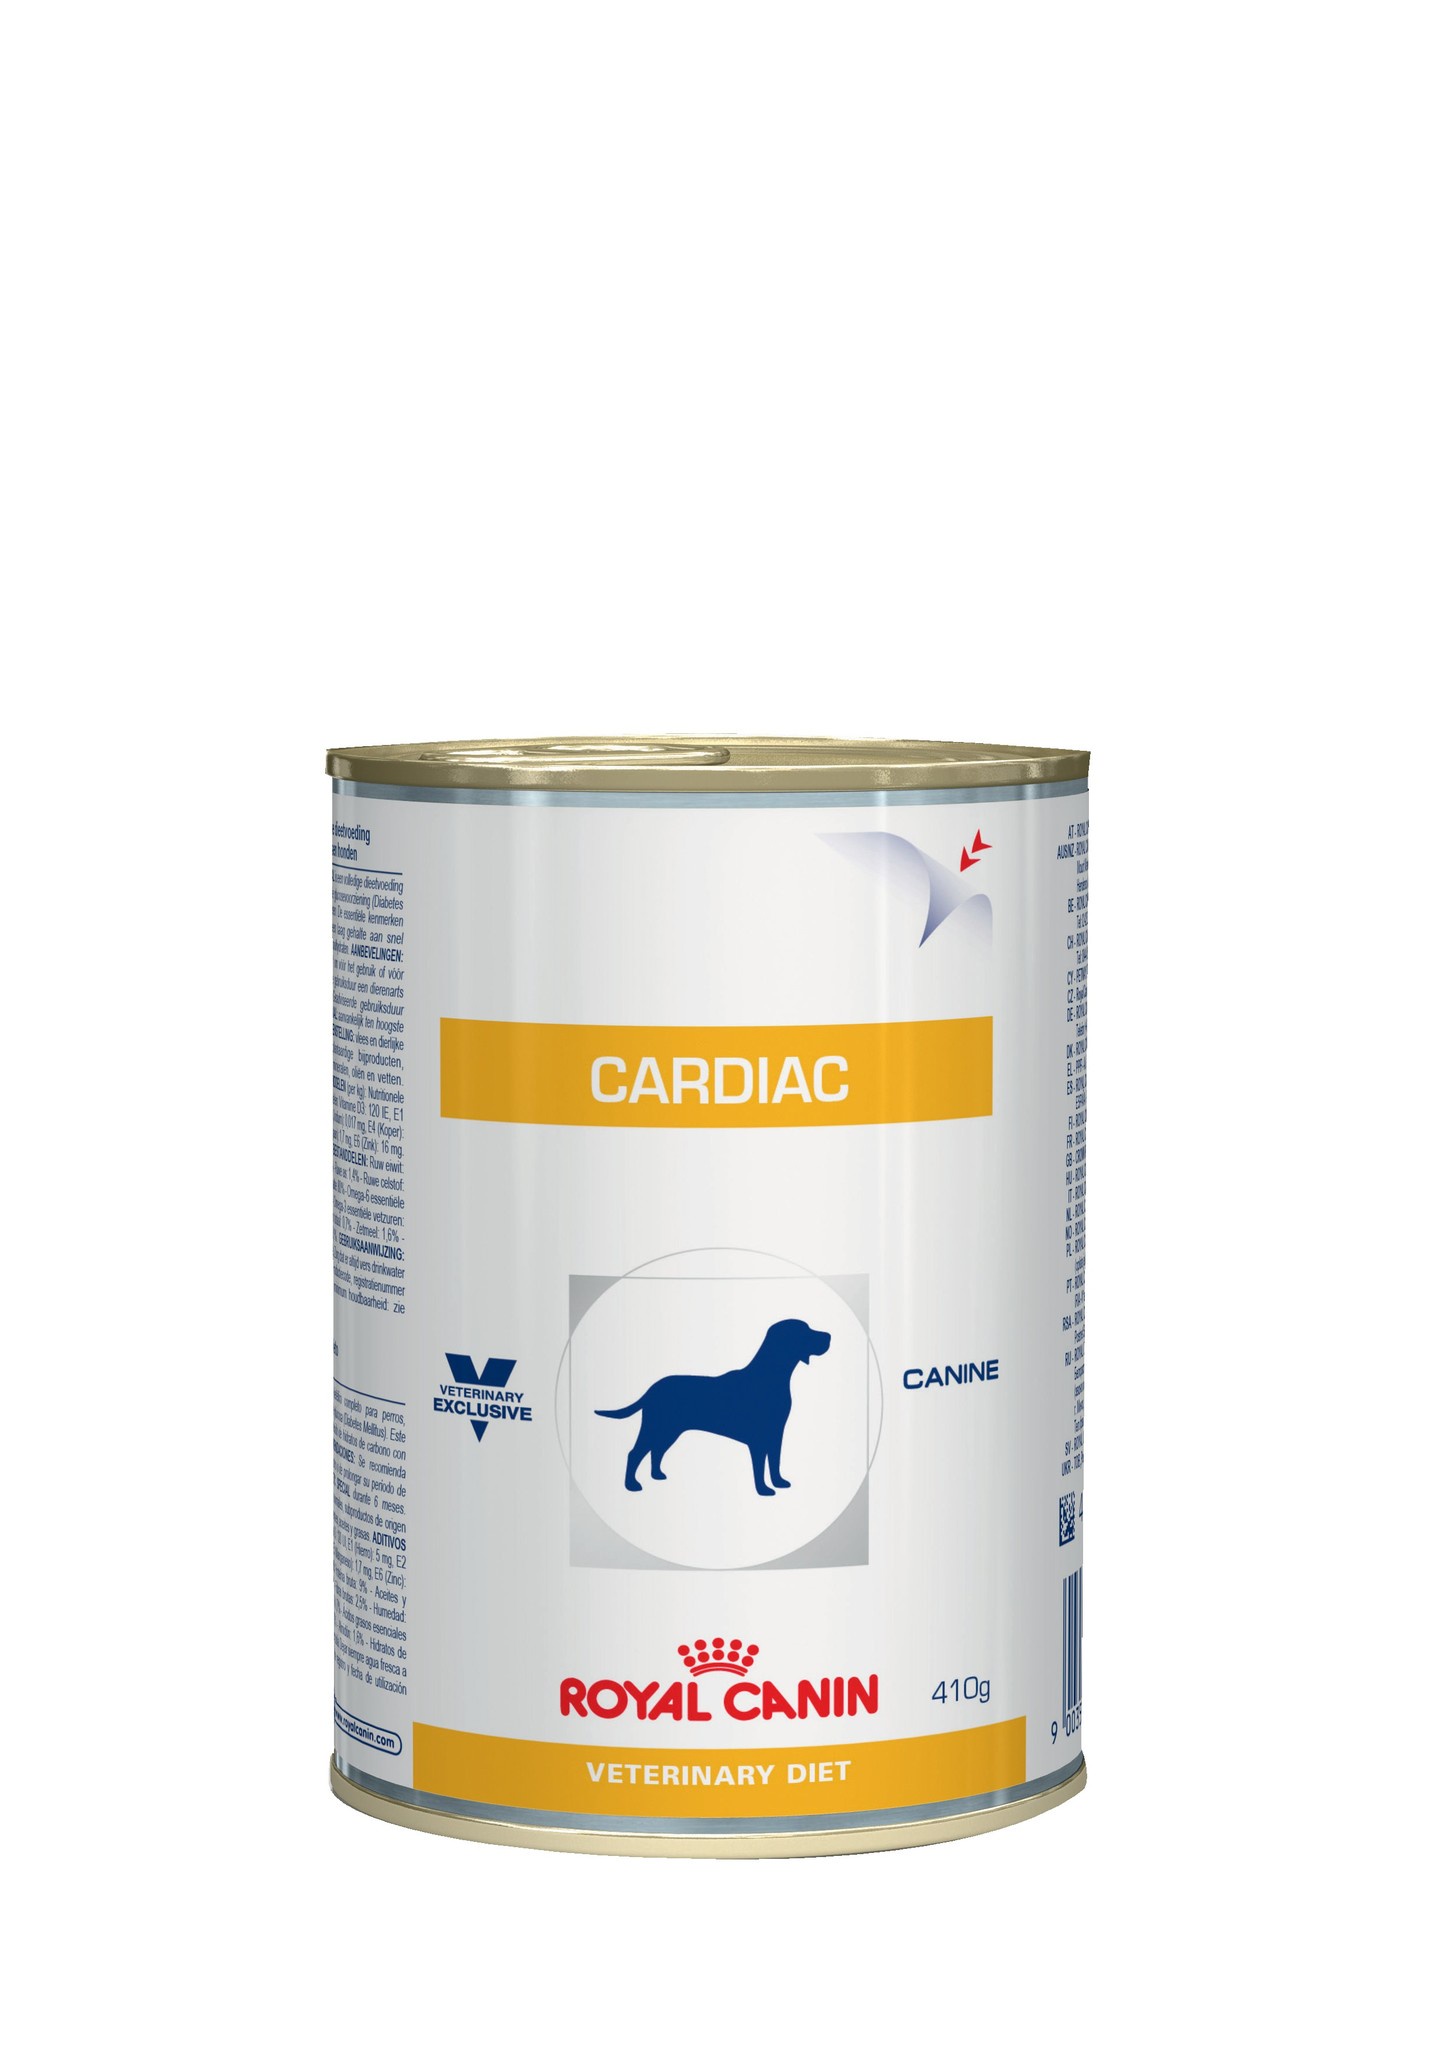 Royal Canin консервы для взрослых и пожилых собак при заболевании сердца (400 гр)